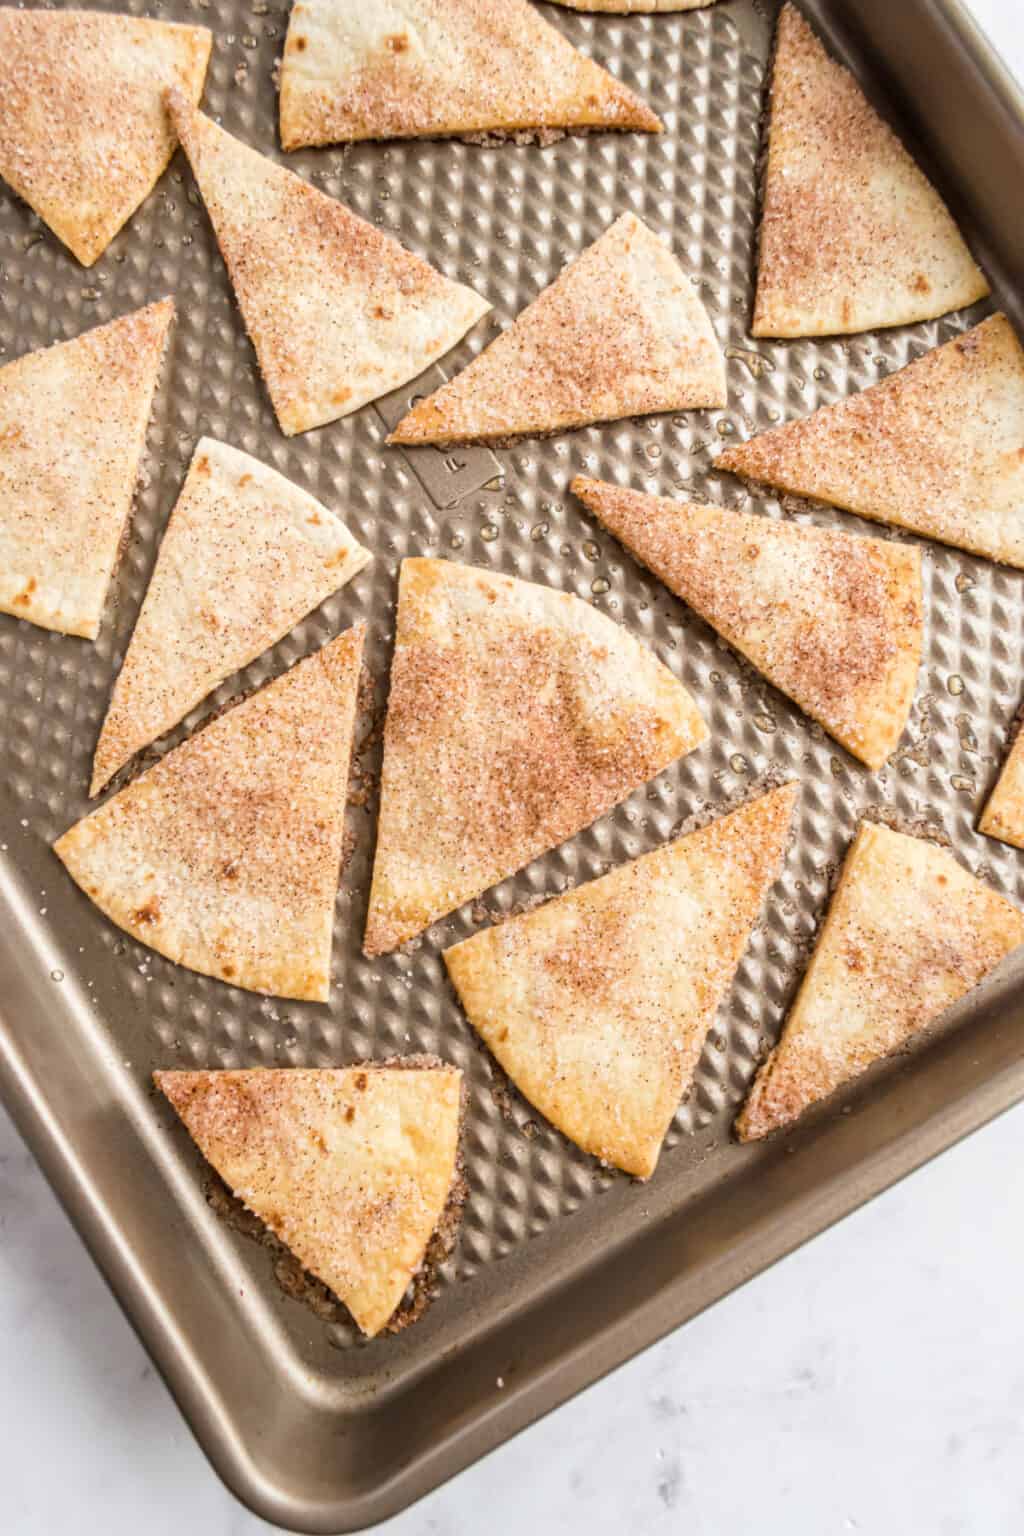 Baked Cinnamon Sugar Tortilla Chips Recipe - Shugary Sweets